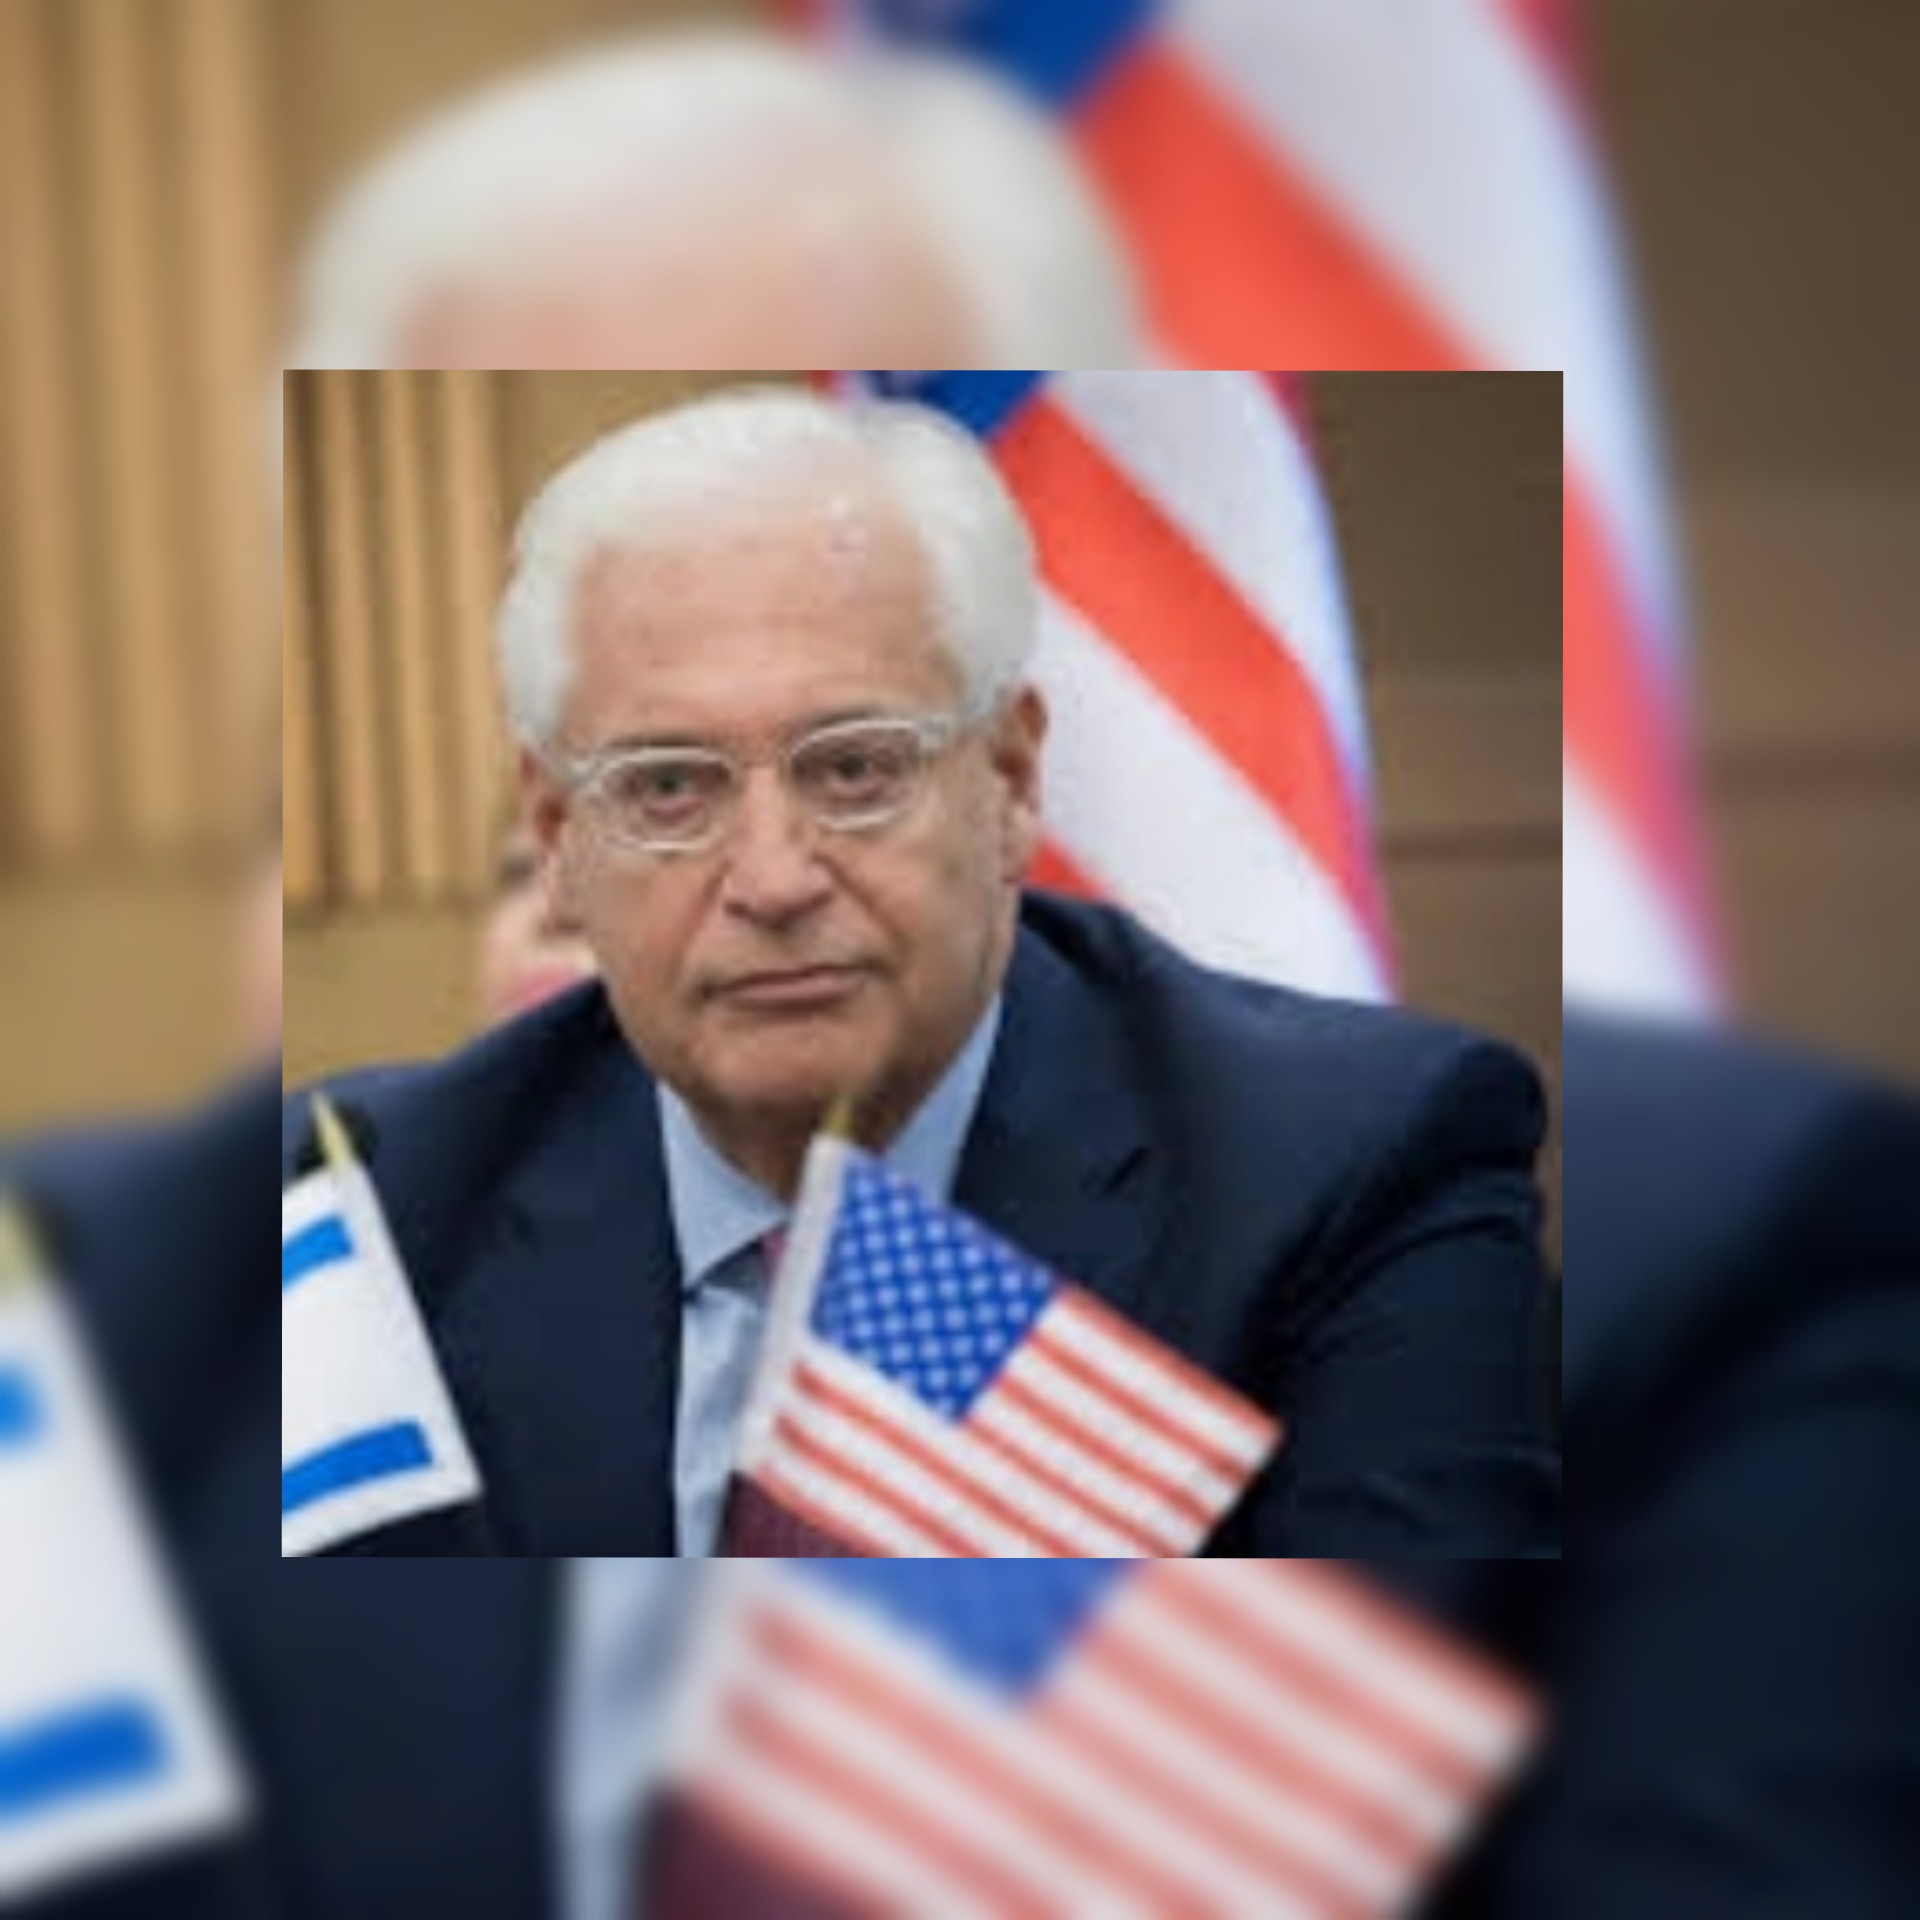 فريدمان لمواقع عبرية: أخشى من تراجع زخم اتفاقيات إبراهيم وعلى العالم أن يقلق من تعاطي واشنطن الضعيف مع النووي الإيراني